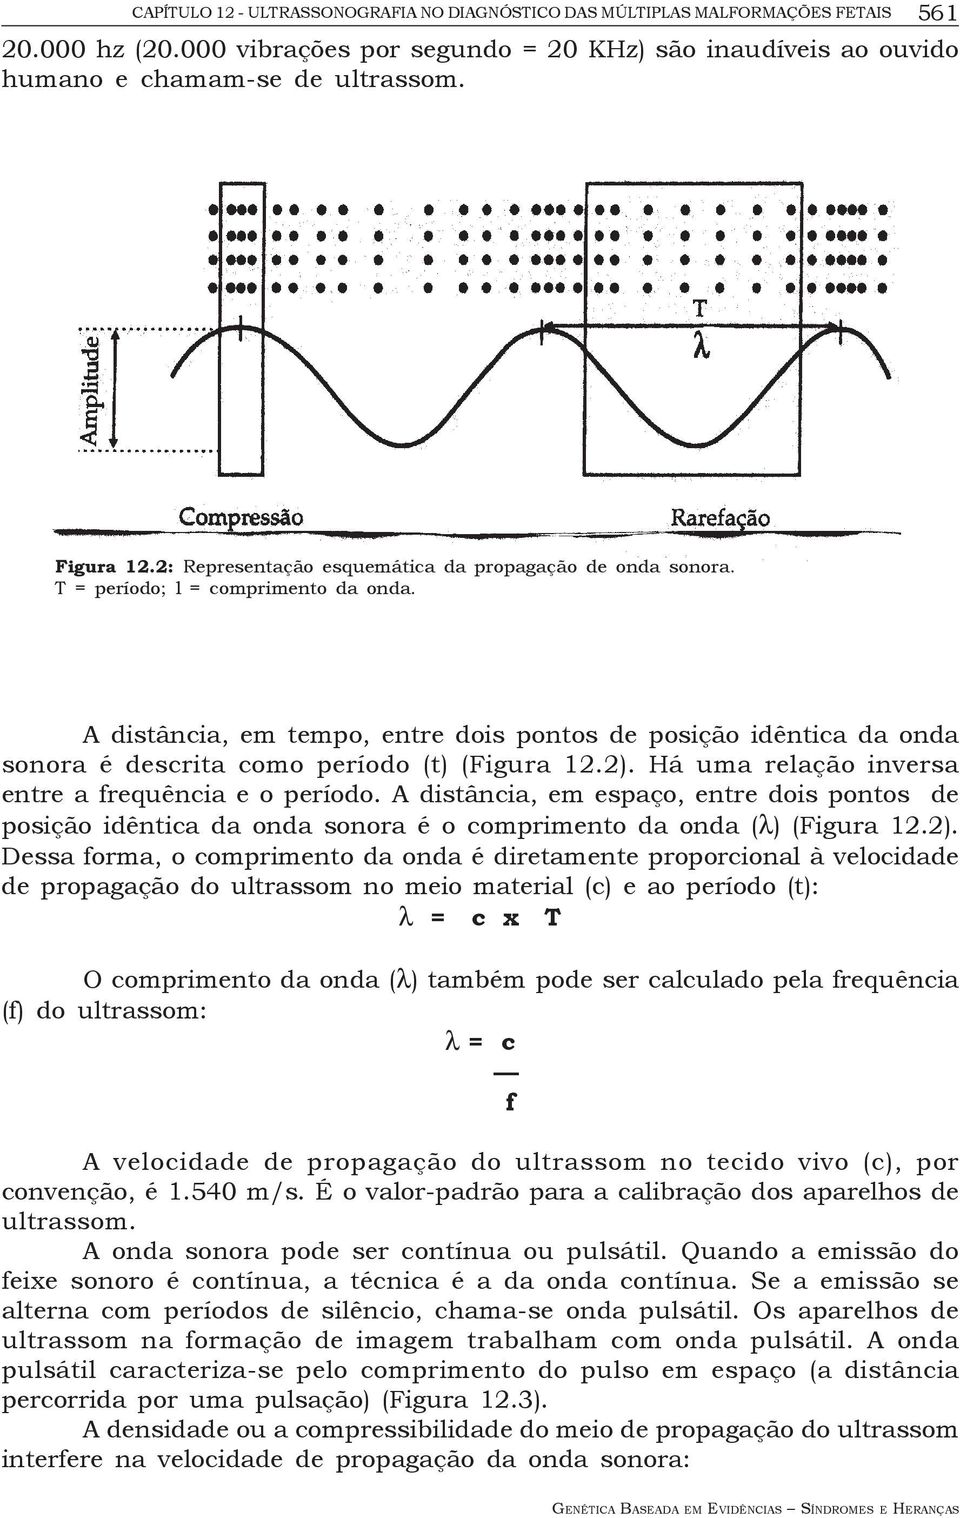 A distância, em tempo, entre dois pontos de posição idêntica da onda sonora é descrita como período (t) (Figura 12.2). Há uma relação inversa entre a frequência e o período.